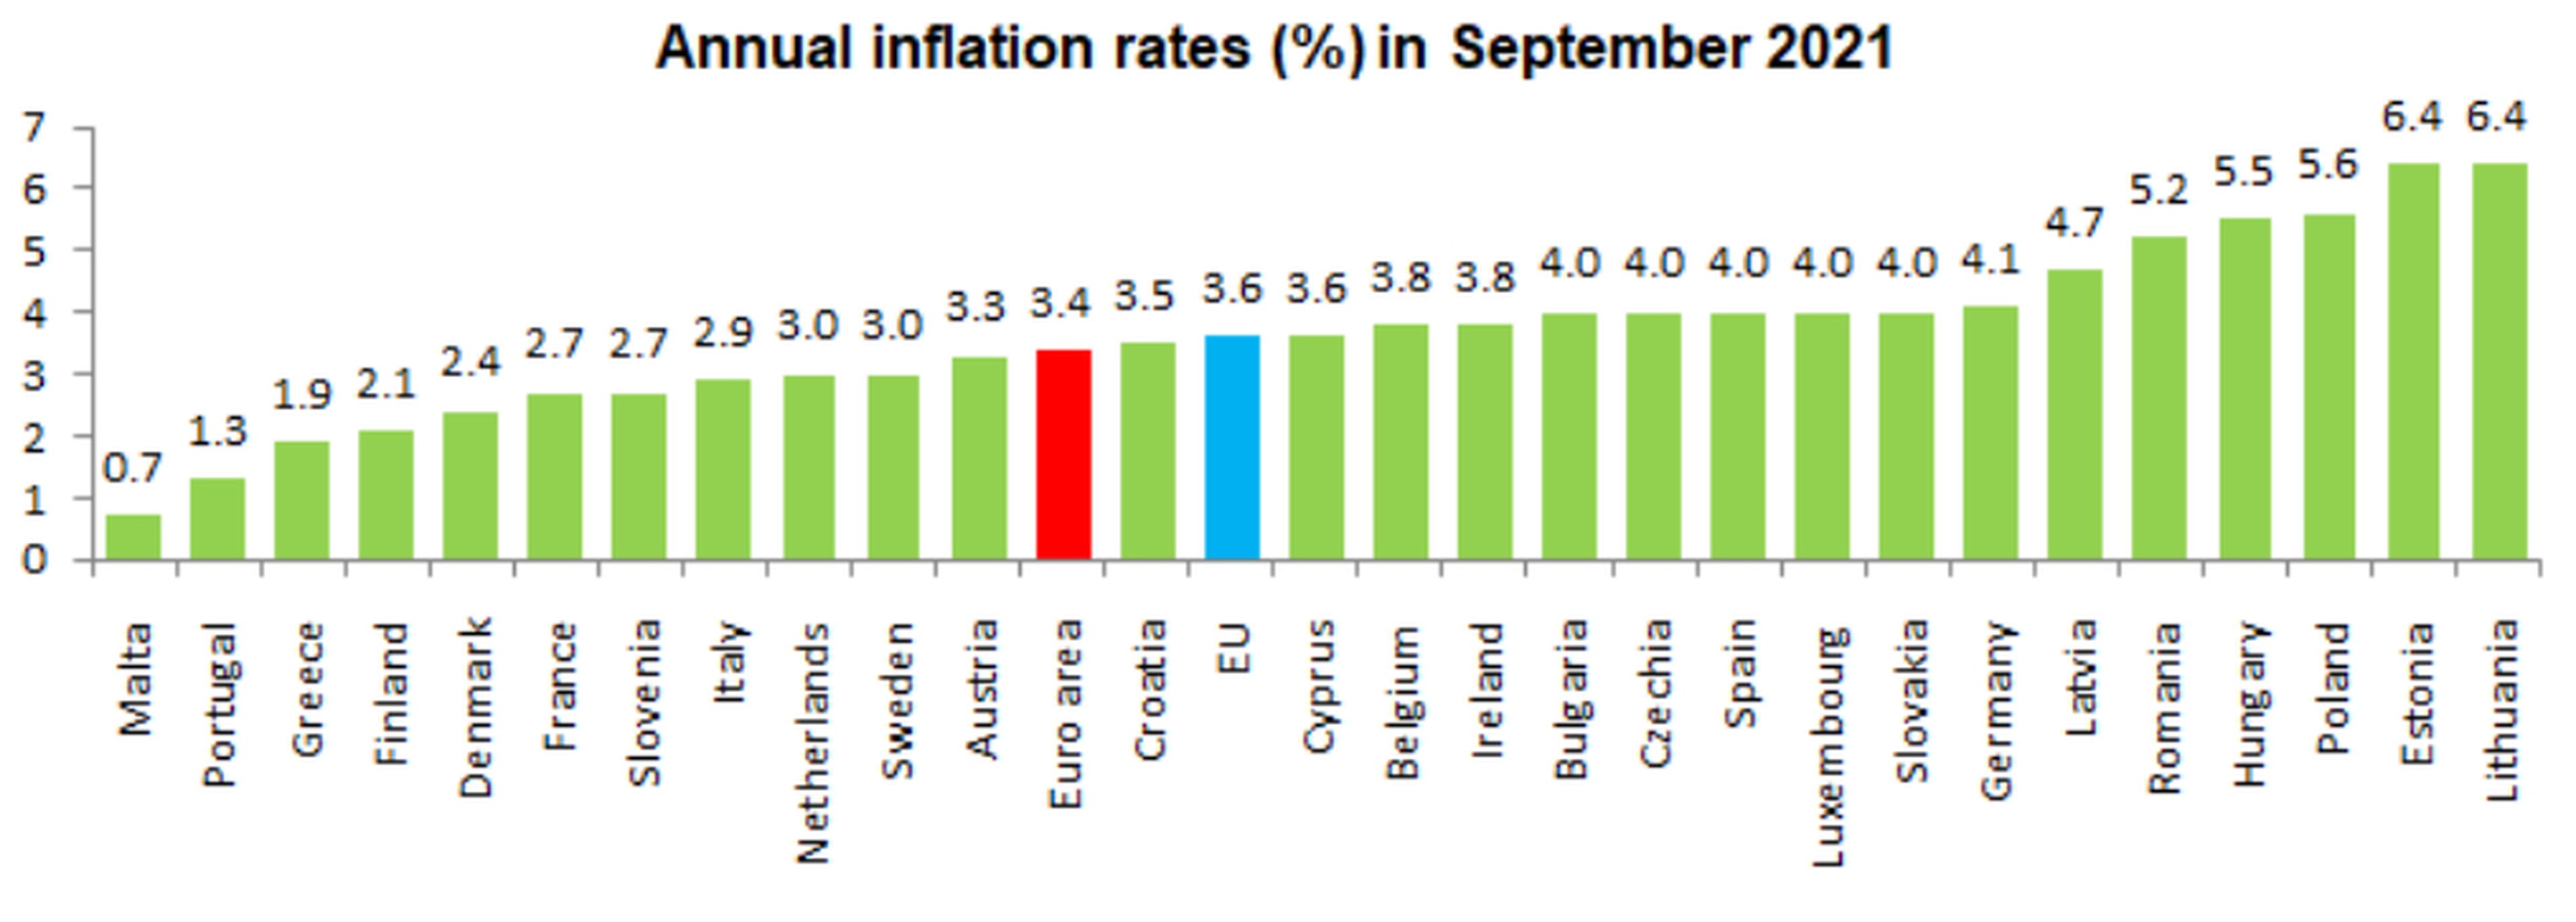 Tasa anual de inflación en cada país de la Unión Europea en septiembre de 2021